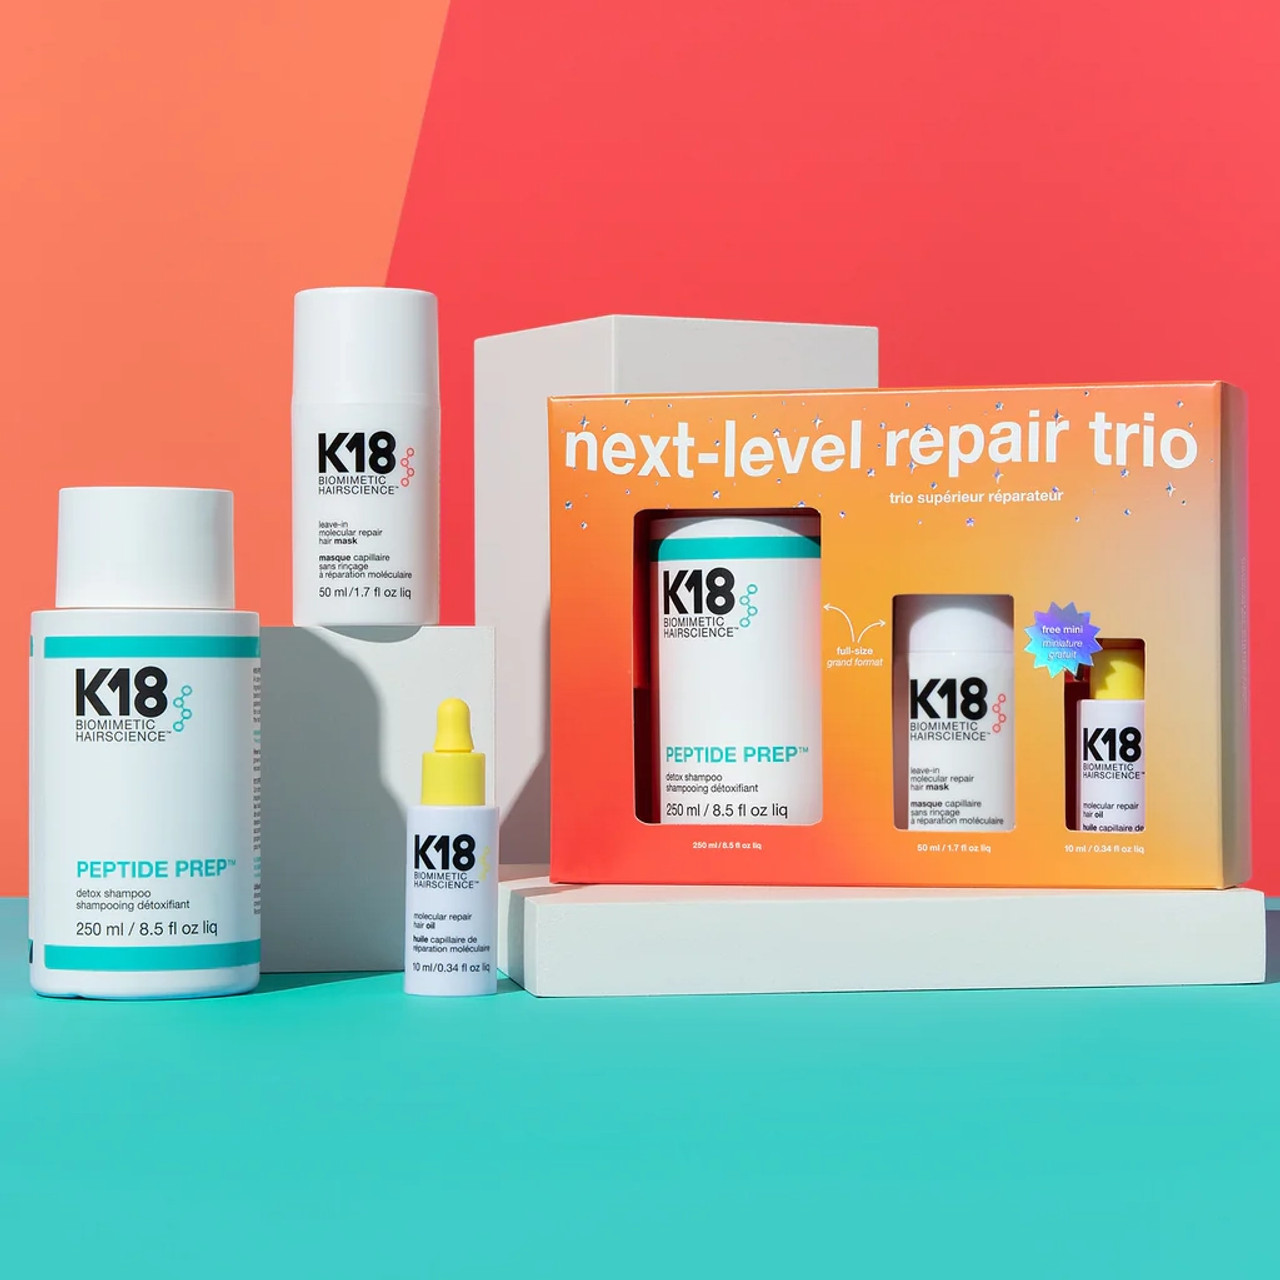 K18 Next Level Repair Trio Pack